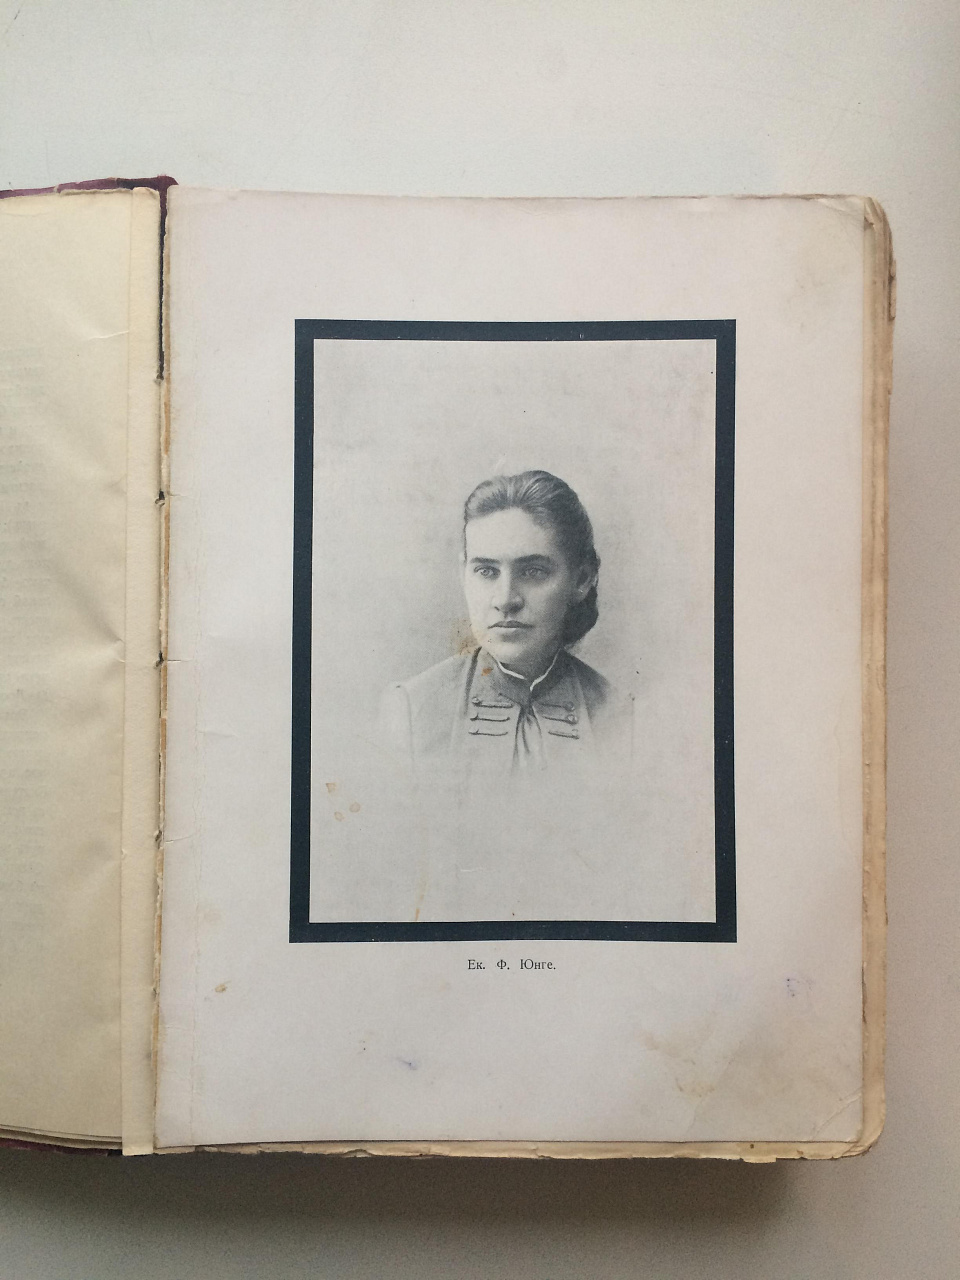 Воспоминания Е.Ф. Юнге ( урожд. графиня Толстая) 1843-1860 года, фото 4